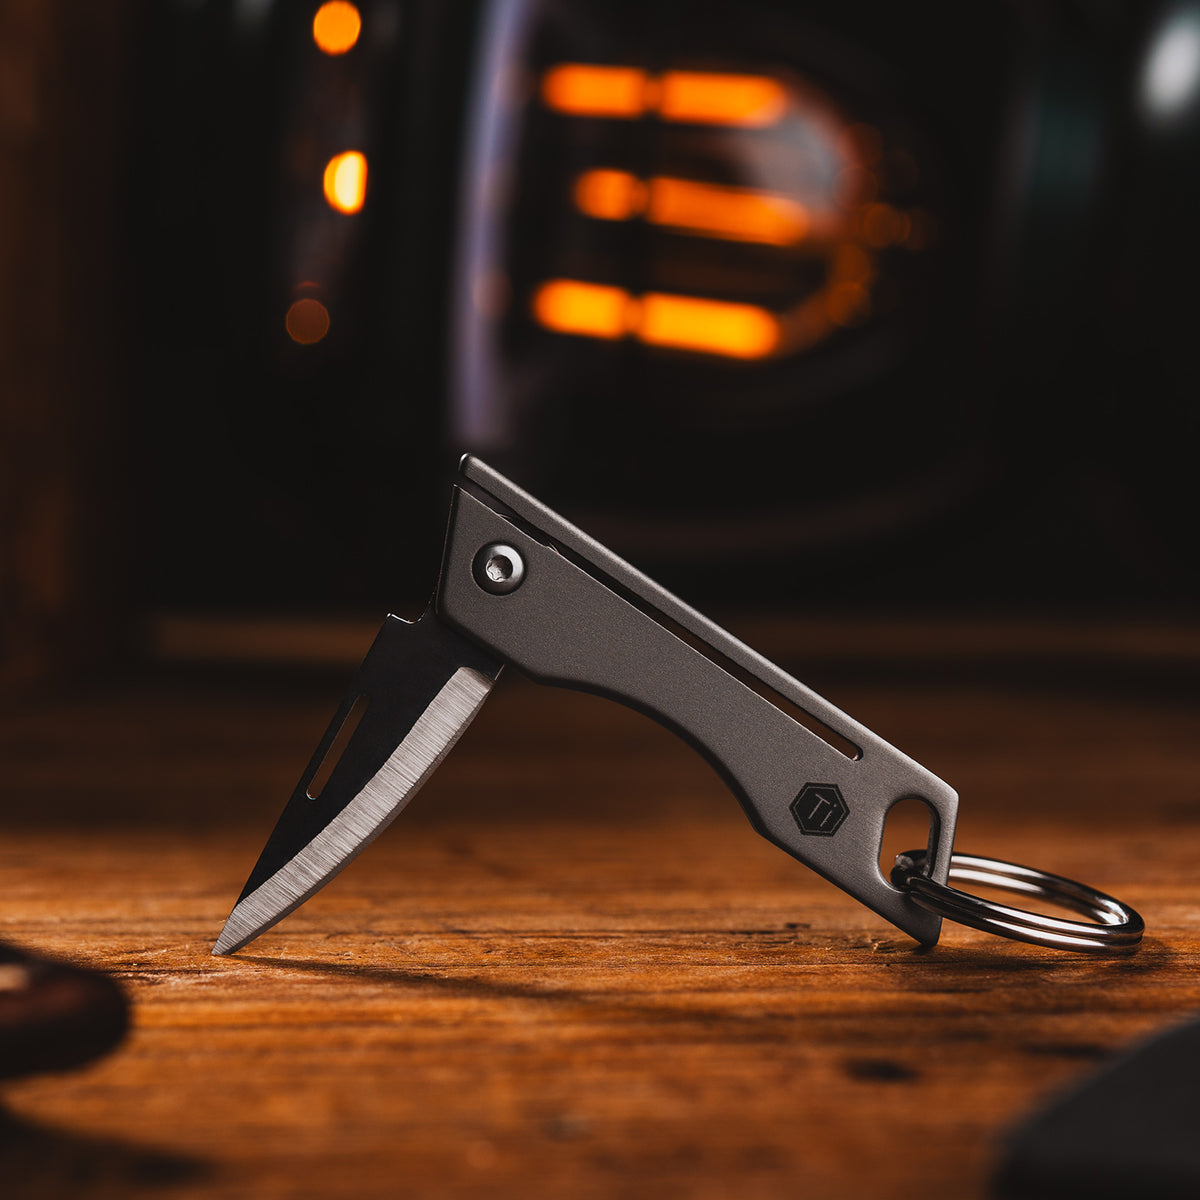 KK06 Mini Folding Knife